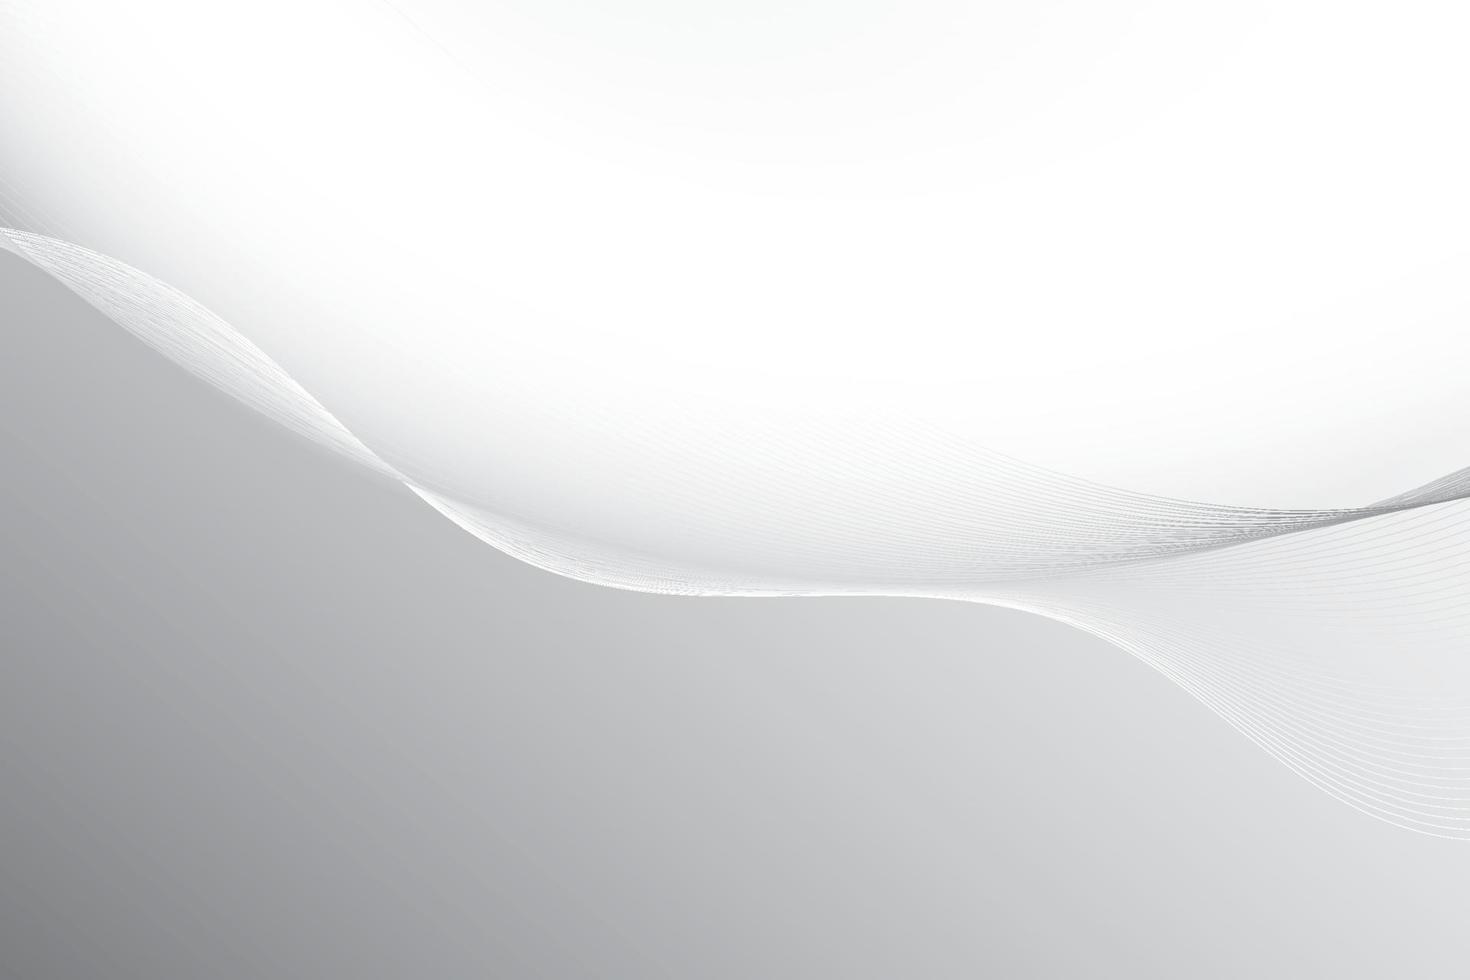 cor branca e cinza abstrata, fundo de listras de design moderno com elemento de onda. ilustração vetorial. vetor